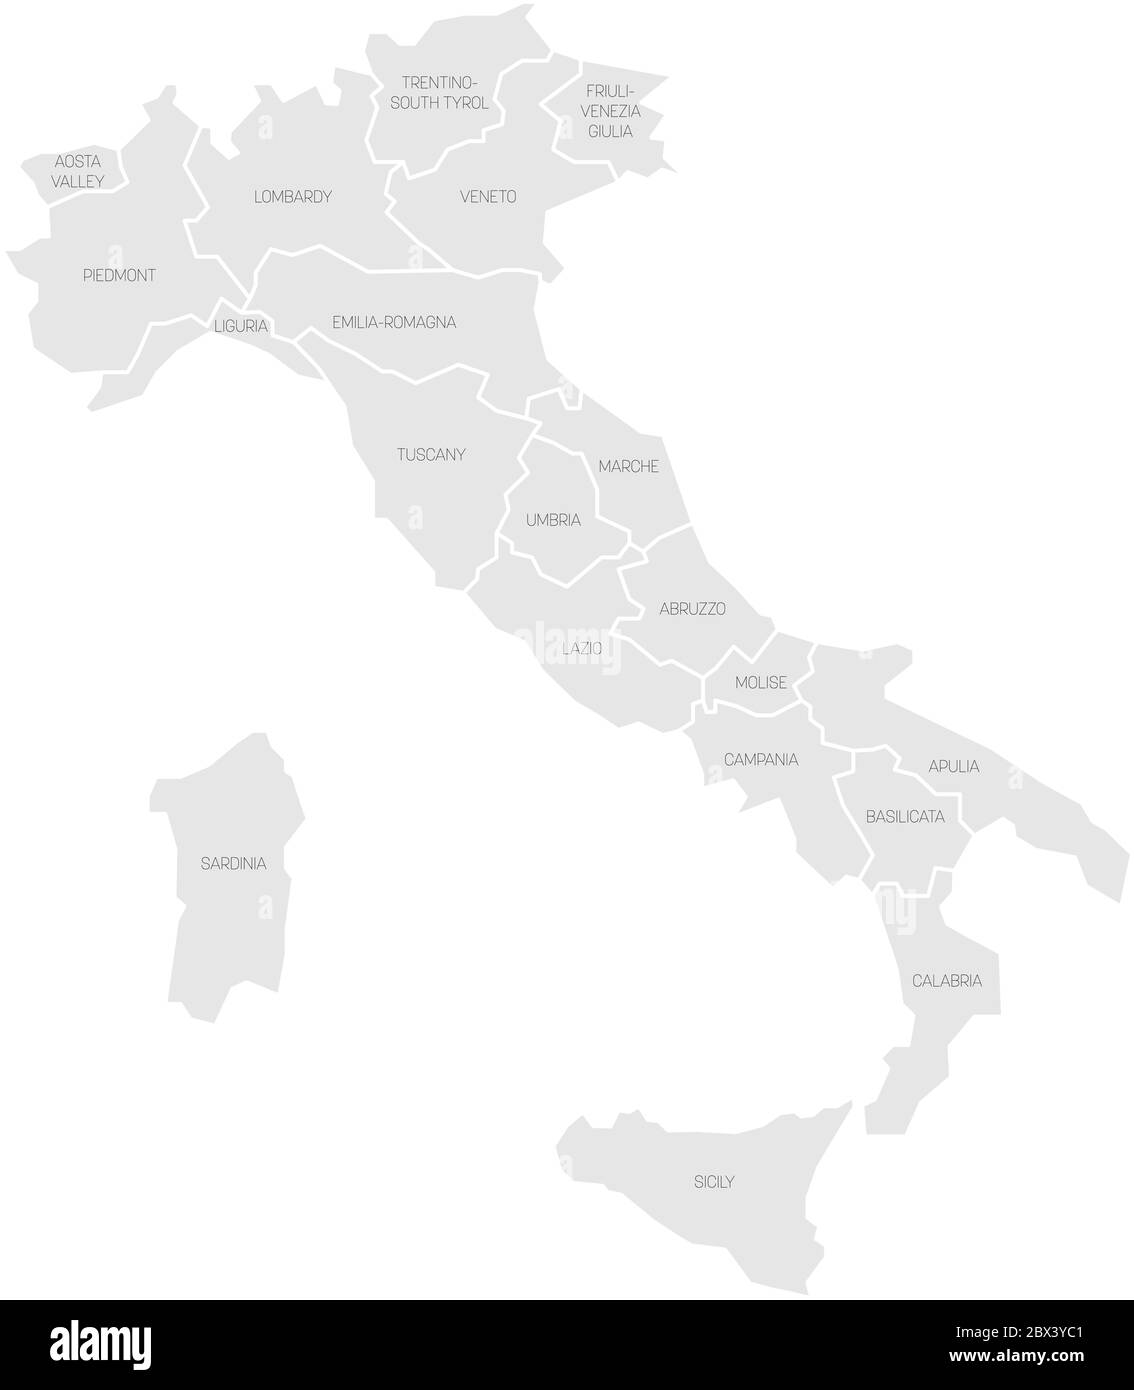 Karte von Italien in 20 Verwaltungsregionen unterteilt. Graues Land, weiße Ränder und schwarze Etiketten. Einfache flache Vektorgrafik. Stock Vektor